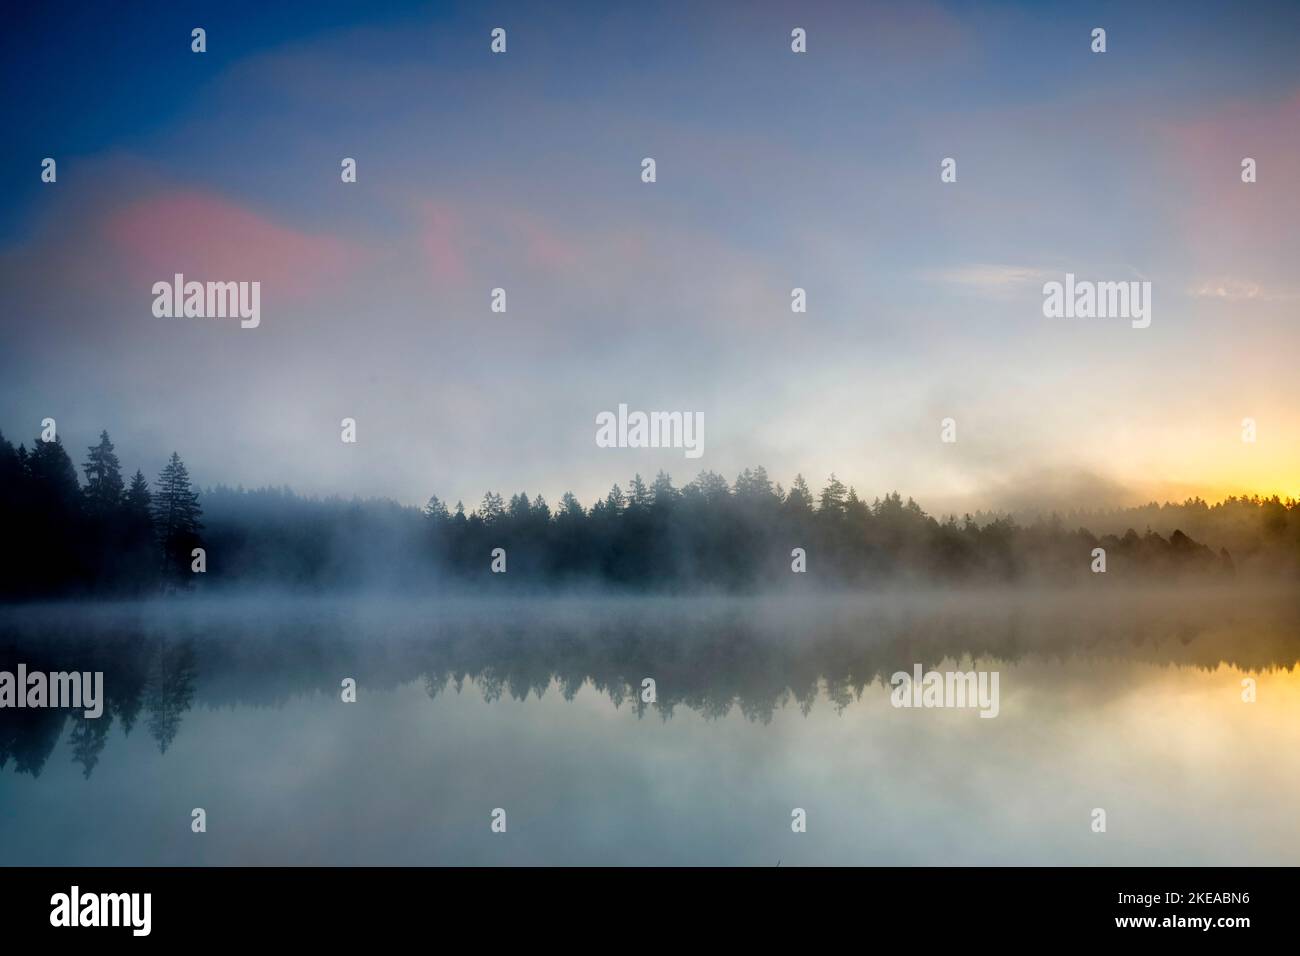 Stimmungsvolle Morgendämmerung mit Nebelschwaden über dem spiegelglatten Moorsee Étang de la Gruère im Kanton Jura, Schweiz Stock Photo